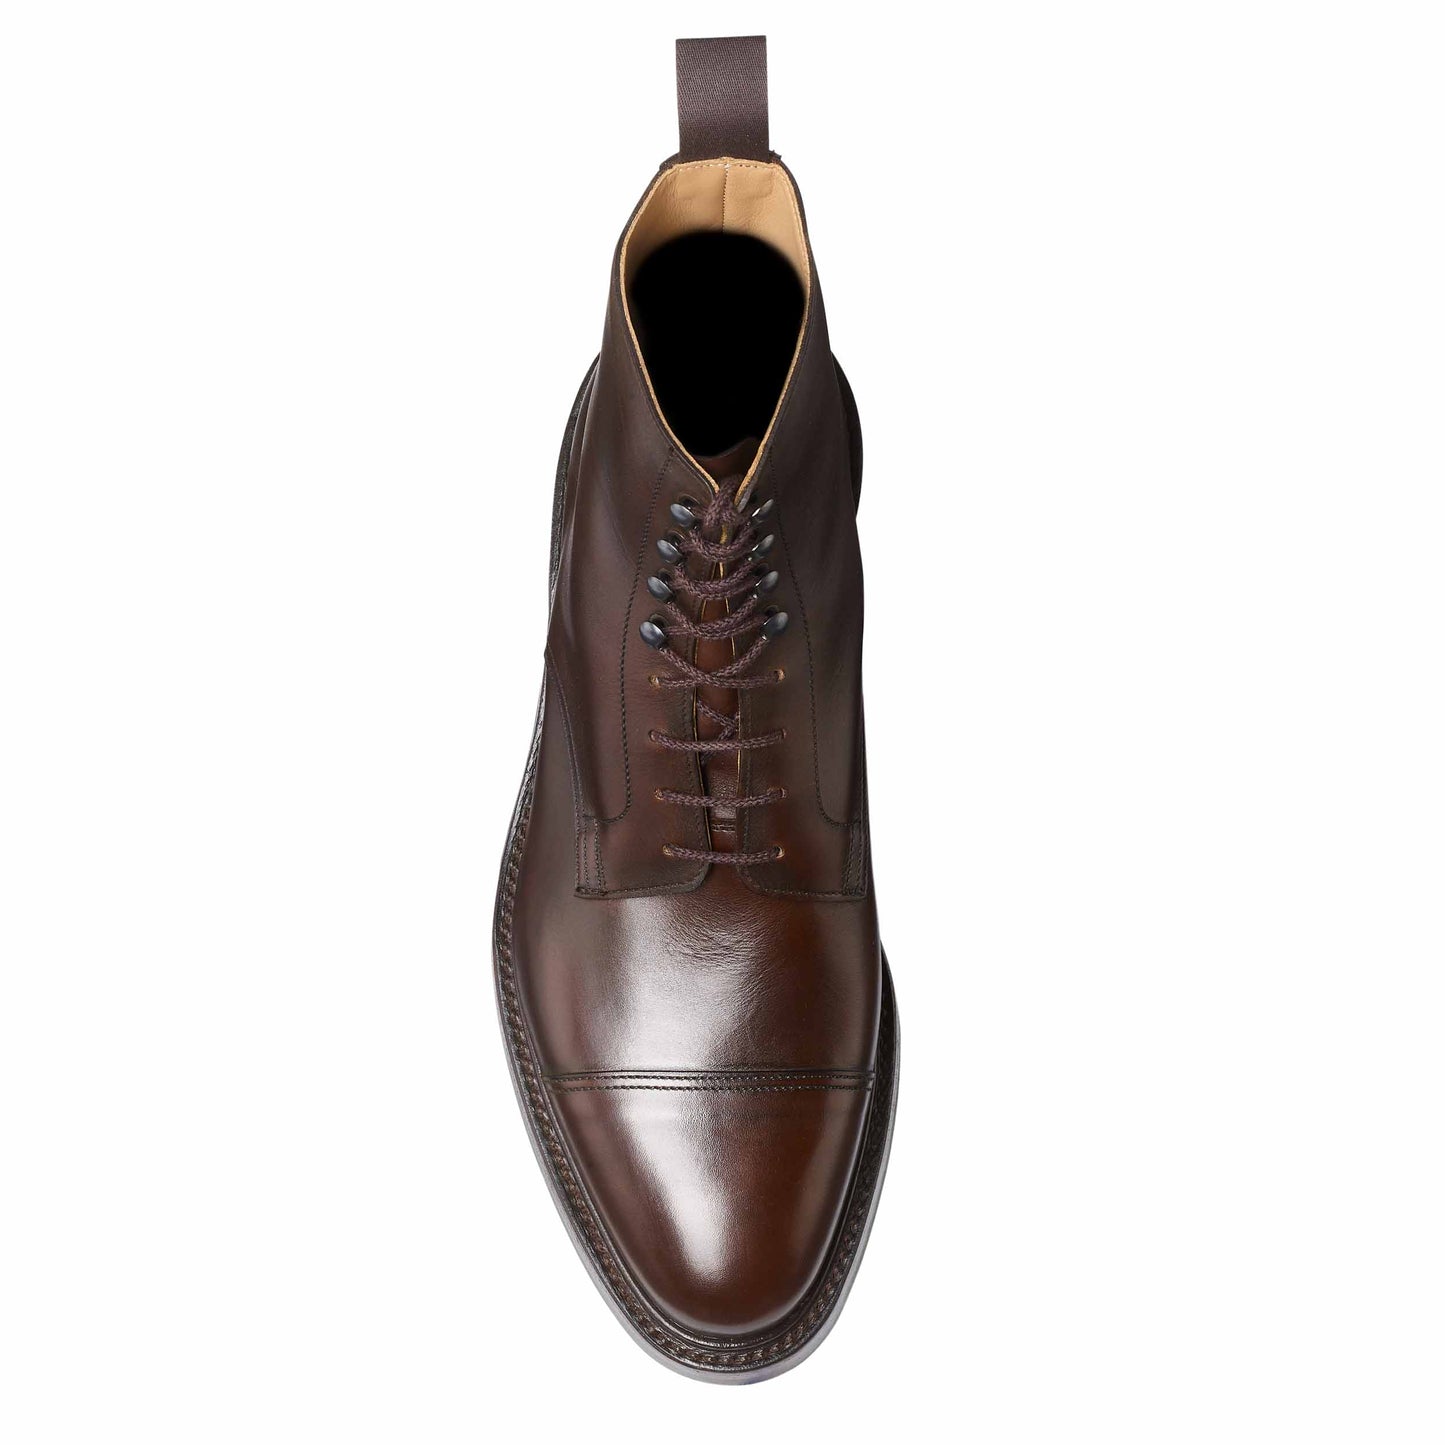 Argyll, Dark brown derby boots made in leather branded Crockett & Jones